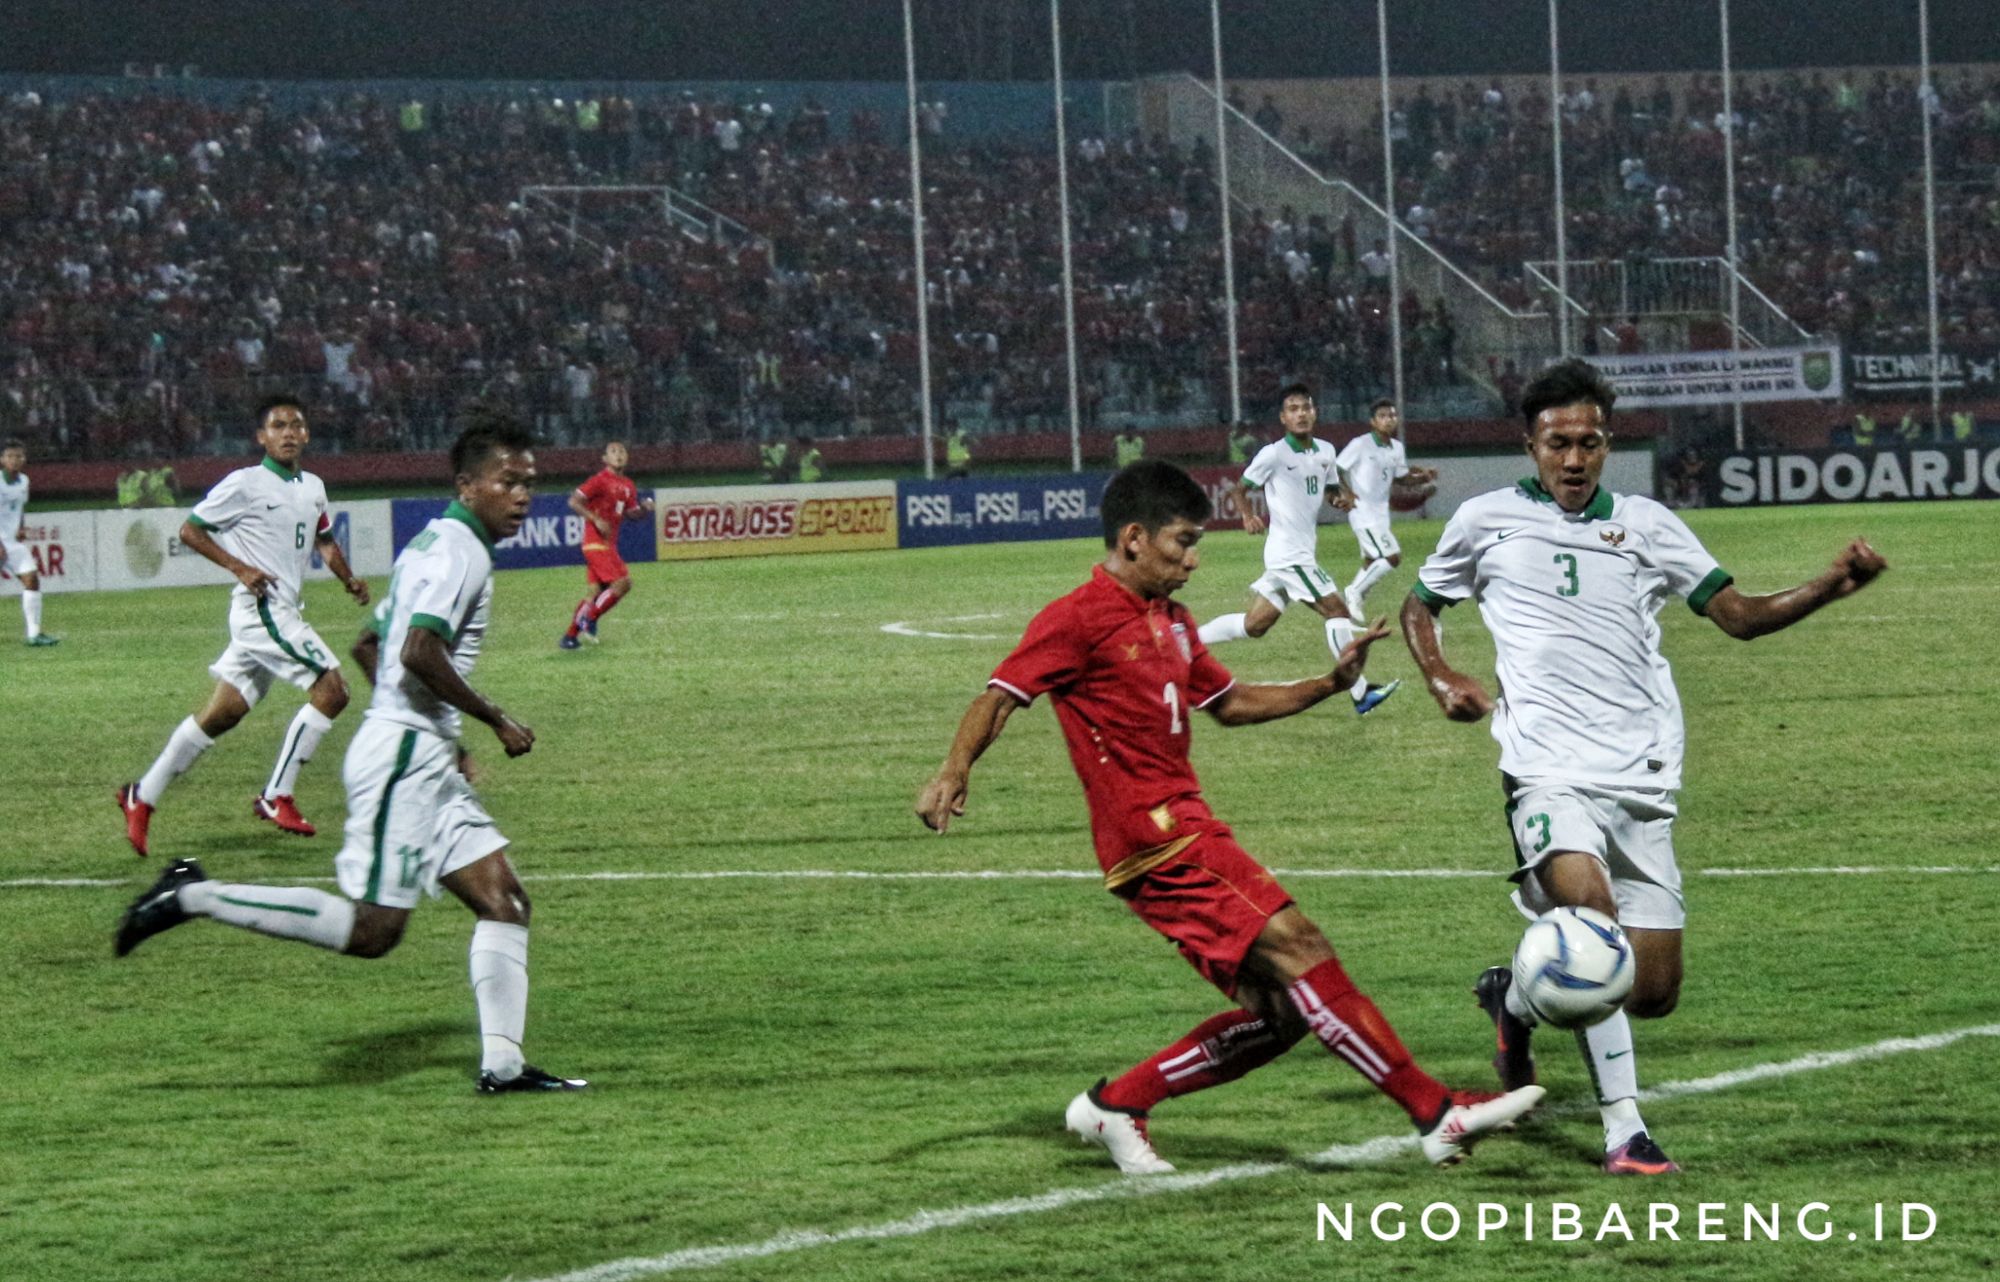 Timnas Indonesia menghadapi Myanmar di Stadion Gelora Delta Sidoarjo, Selasa 31 Juli 2018. (foto: hrs/ngopibareng)